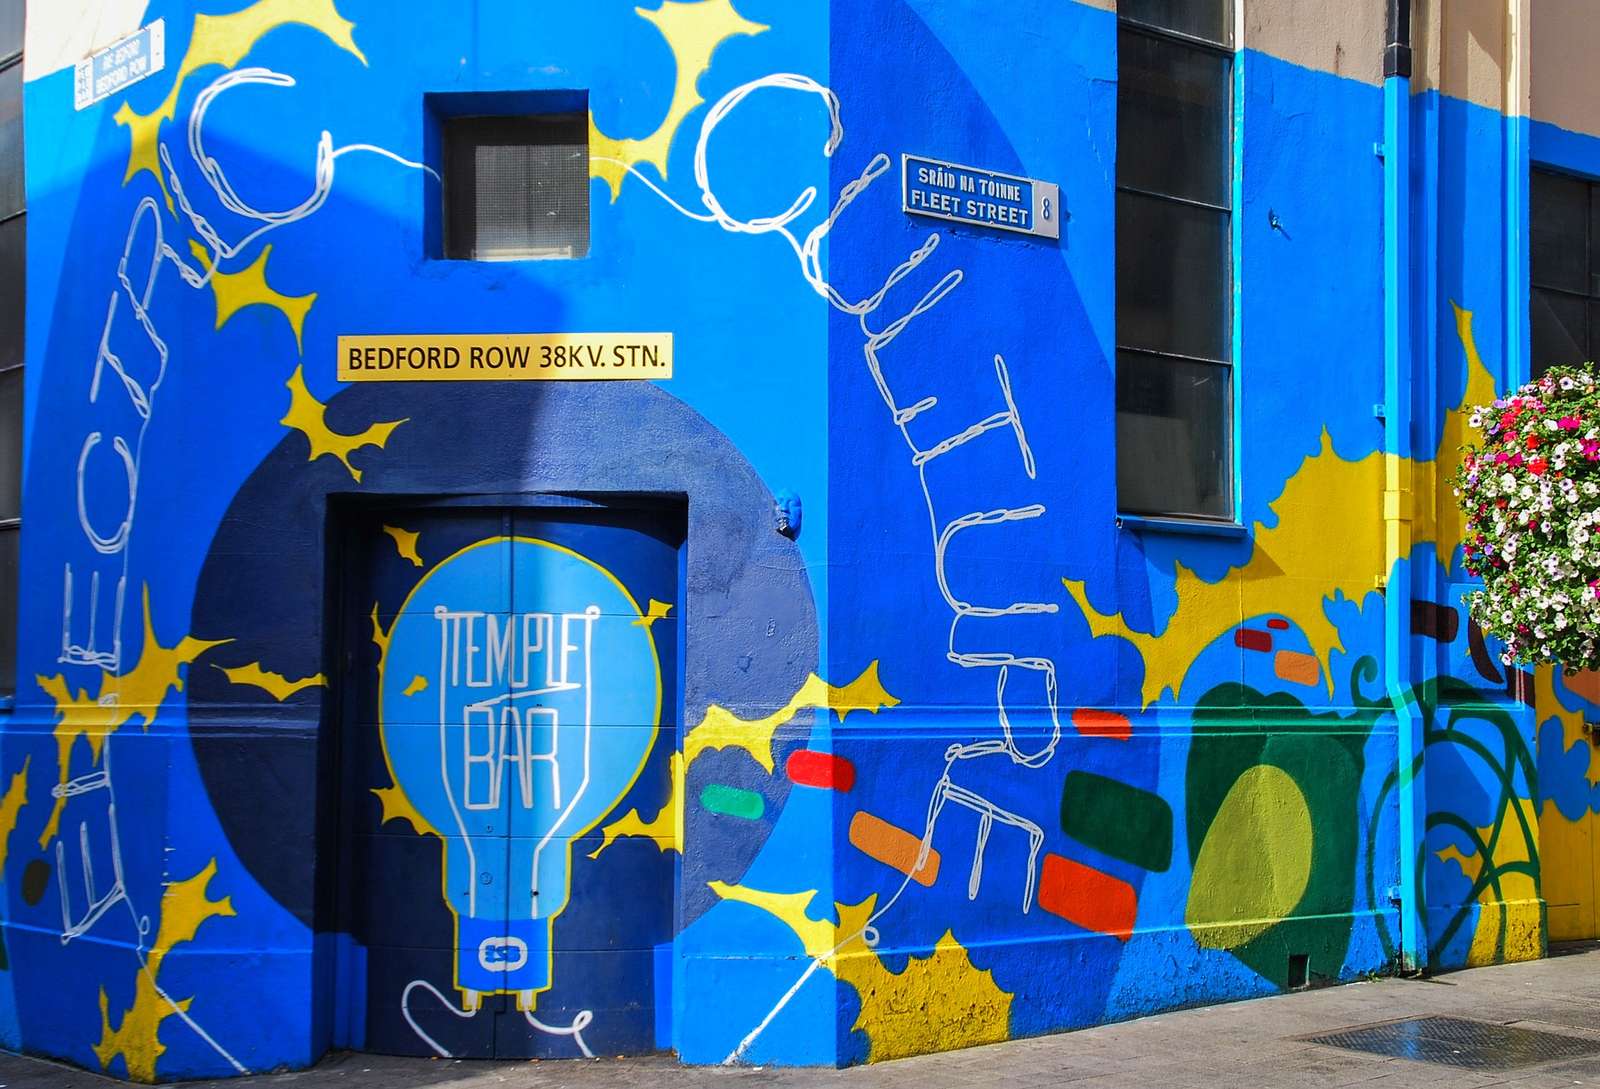 Dublín. Una colorida fachada en el barrio de Tempe Bar rompecabezas en línea